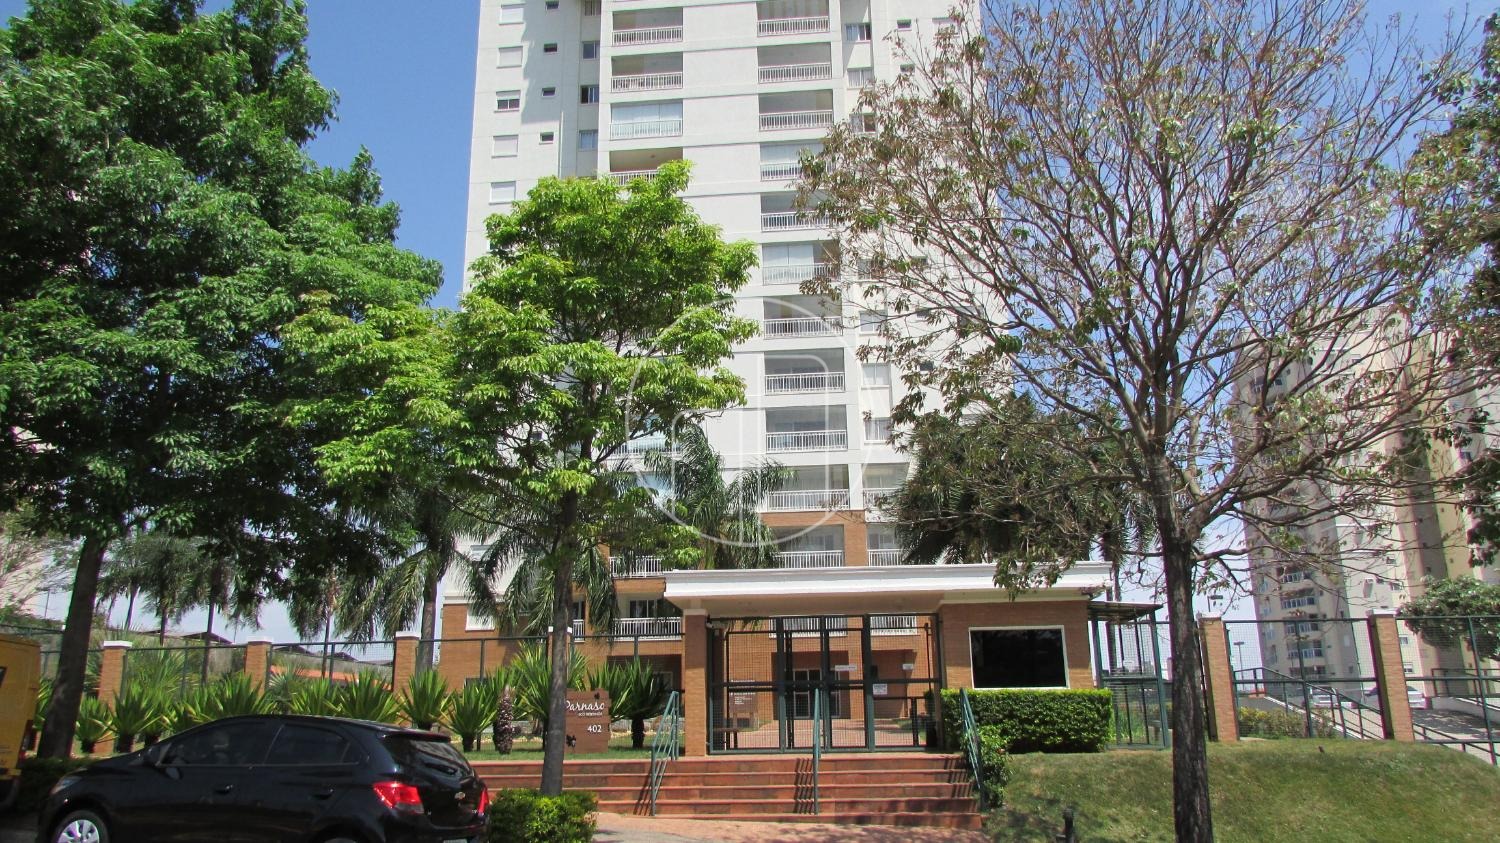 Piccoloto - Apartamento à venda no Parque Prado em Campinas